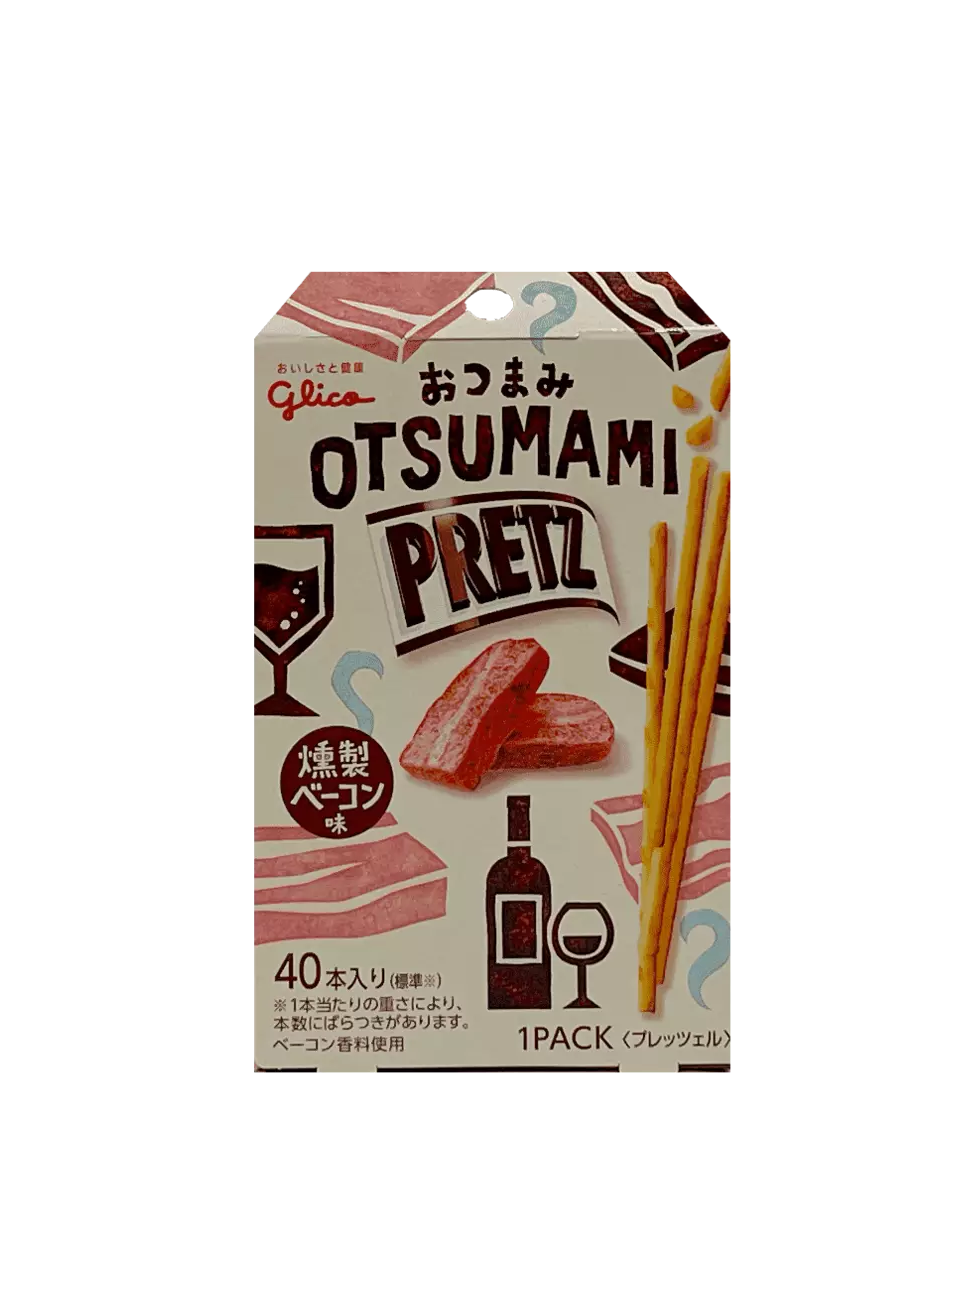 PRETZ Otsumami Rökt Bacon 24g Glico Japan